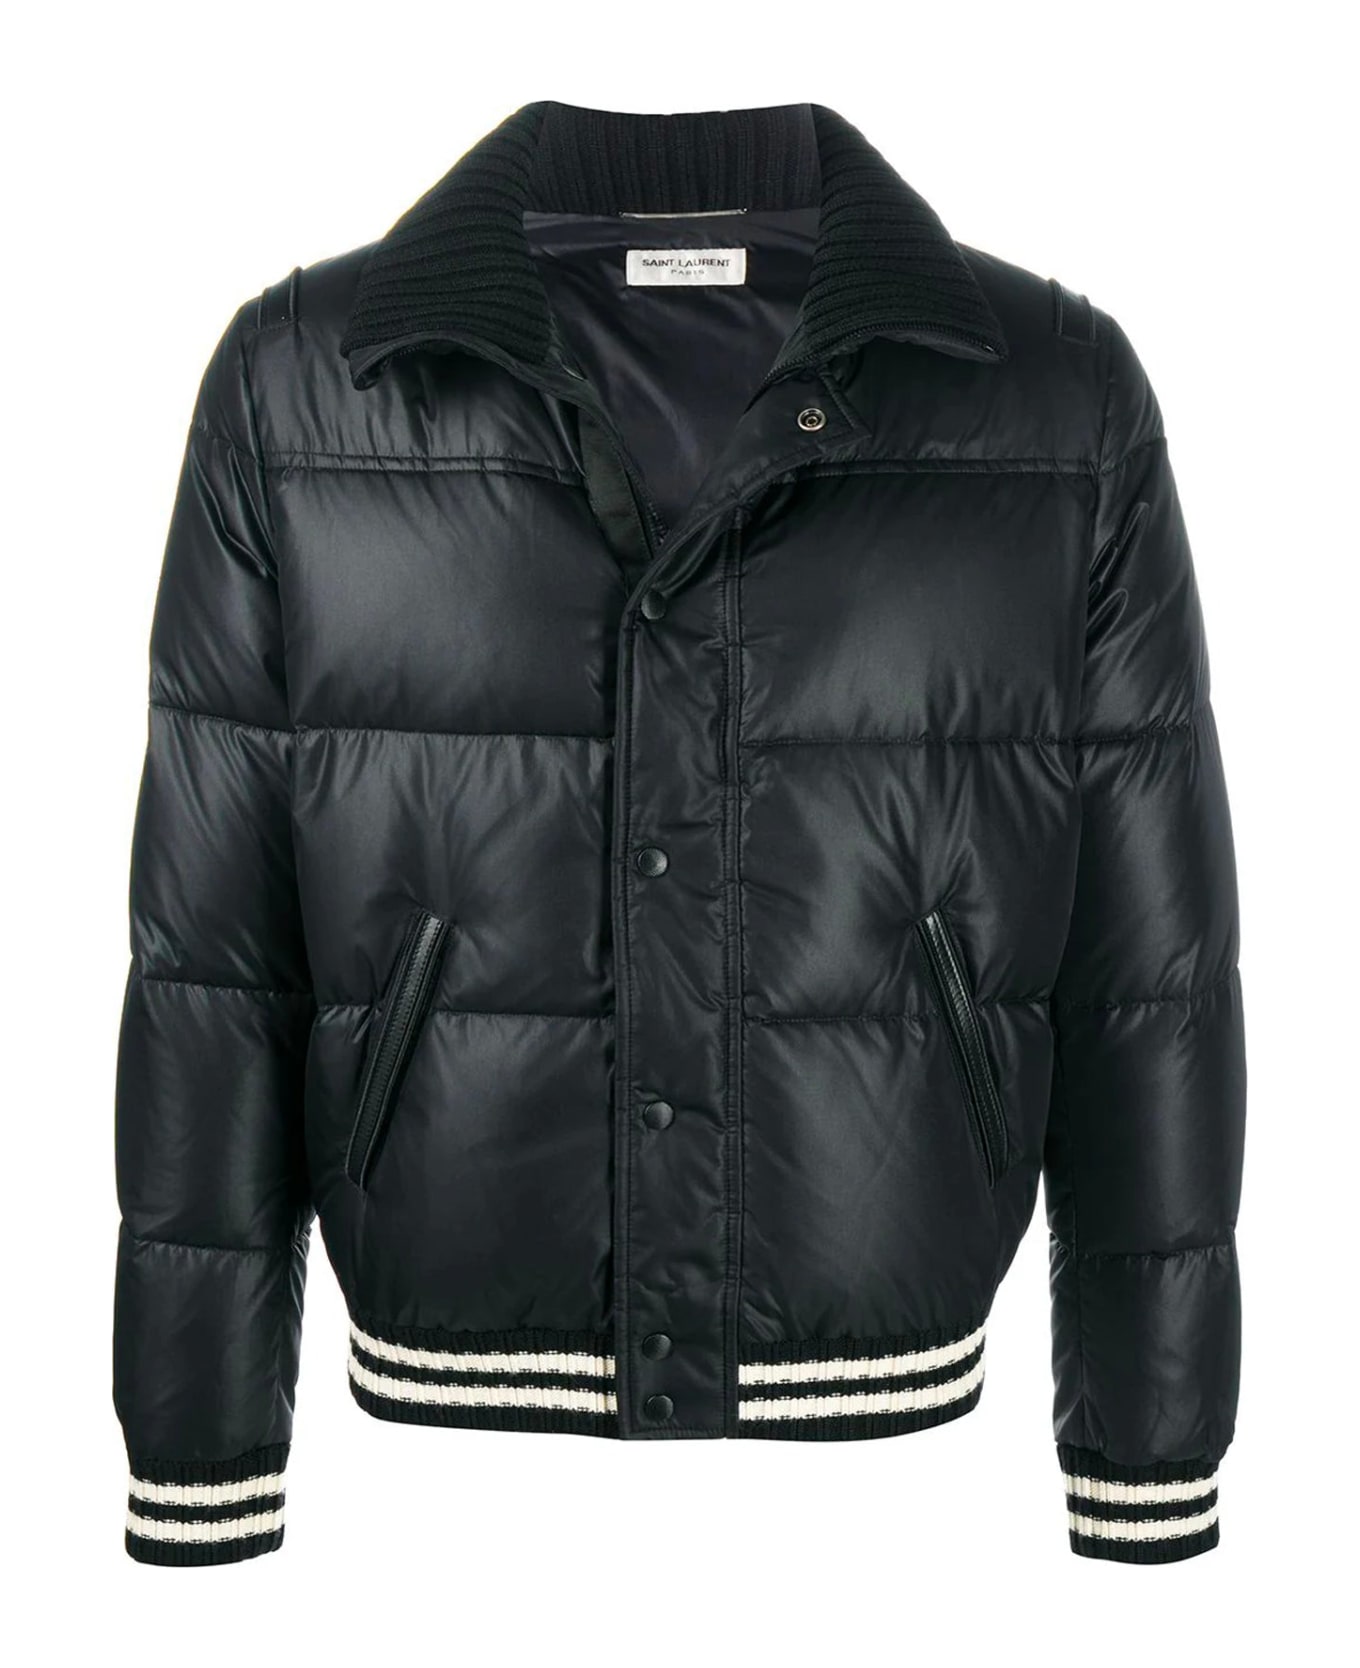 Saint Laurent Padded Jacket - Black